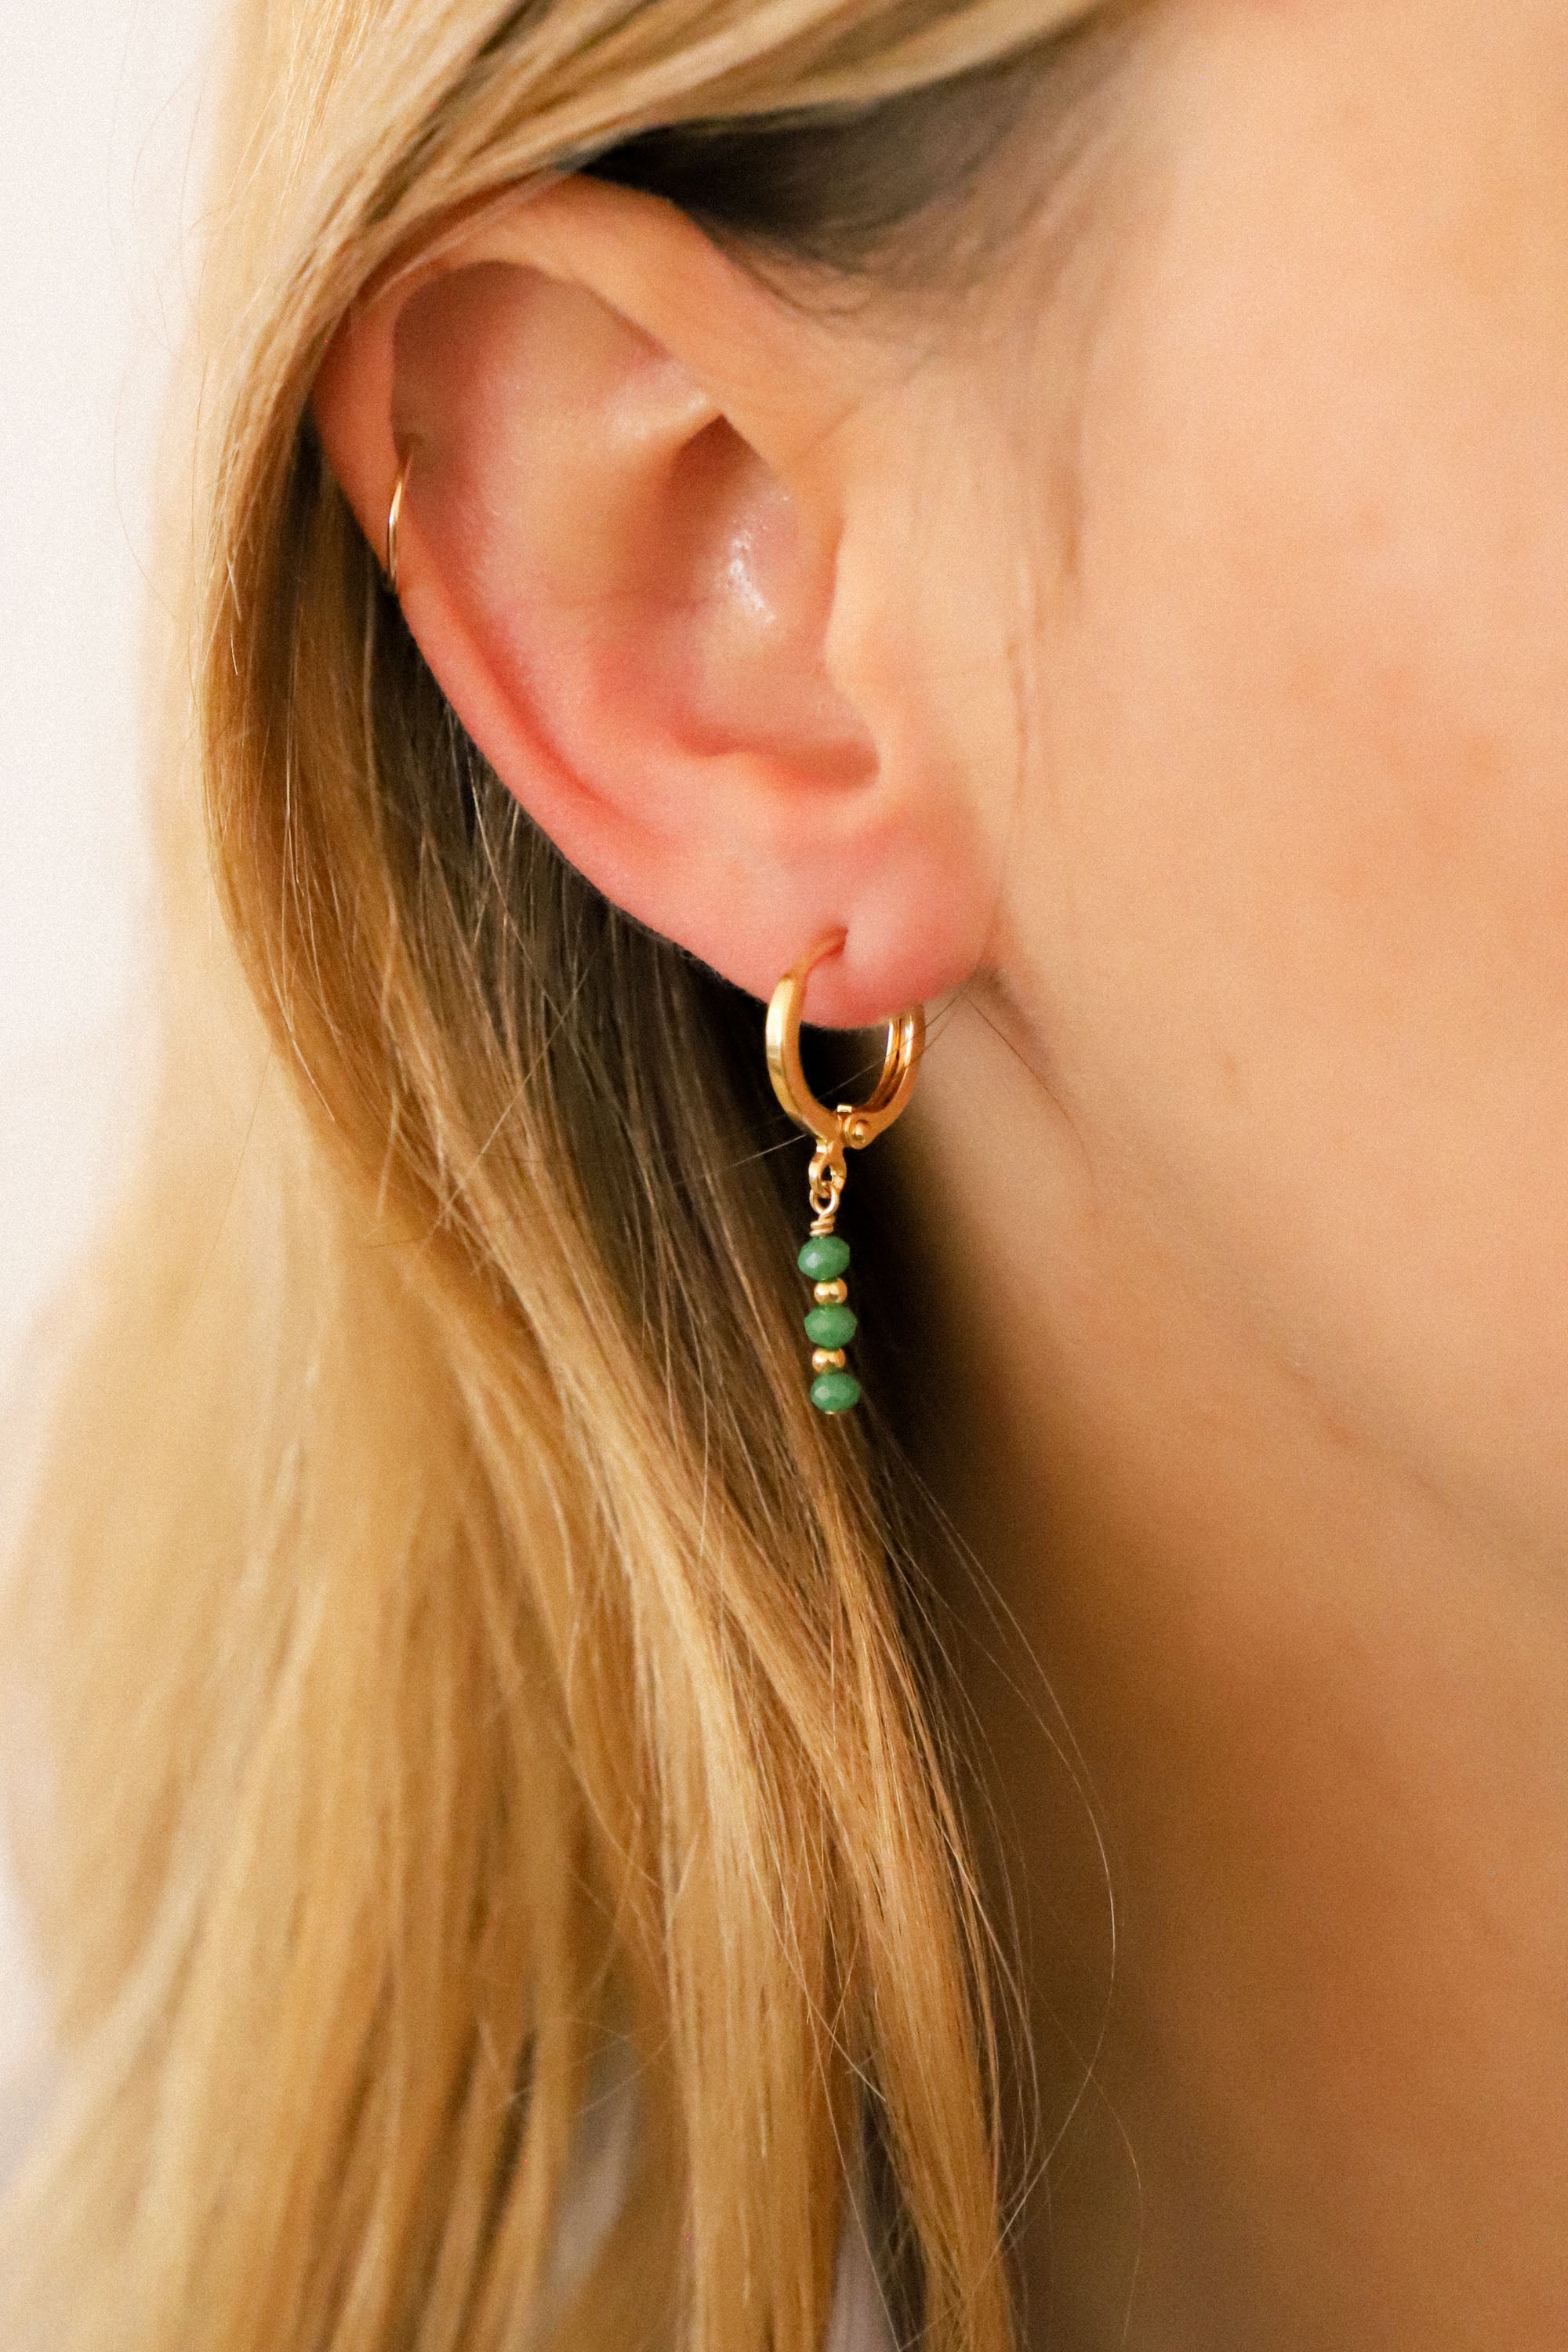 Boucles d'oreilles Minorque avec perles vertes. Plaqué or 24 carats.